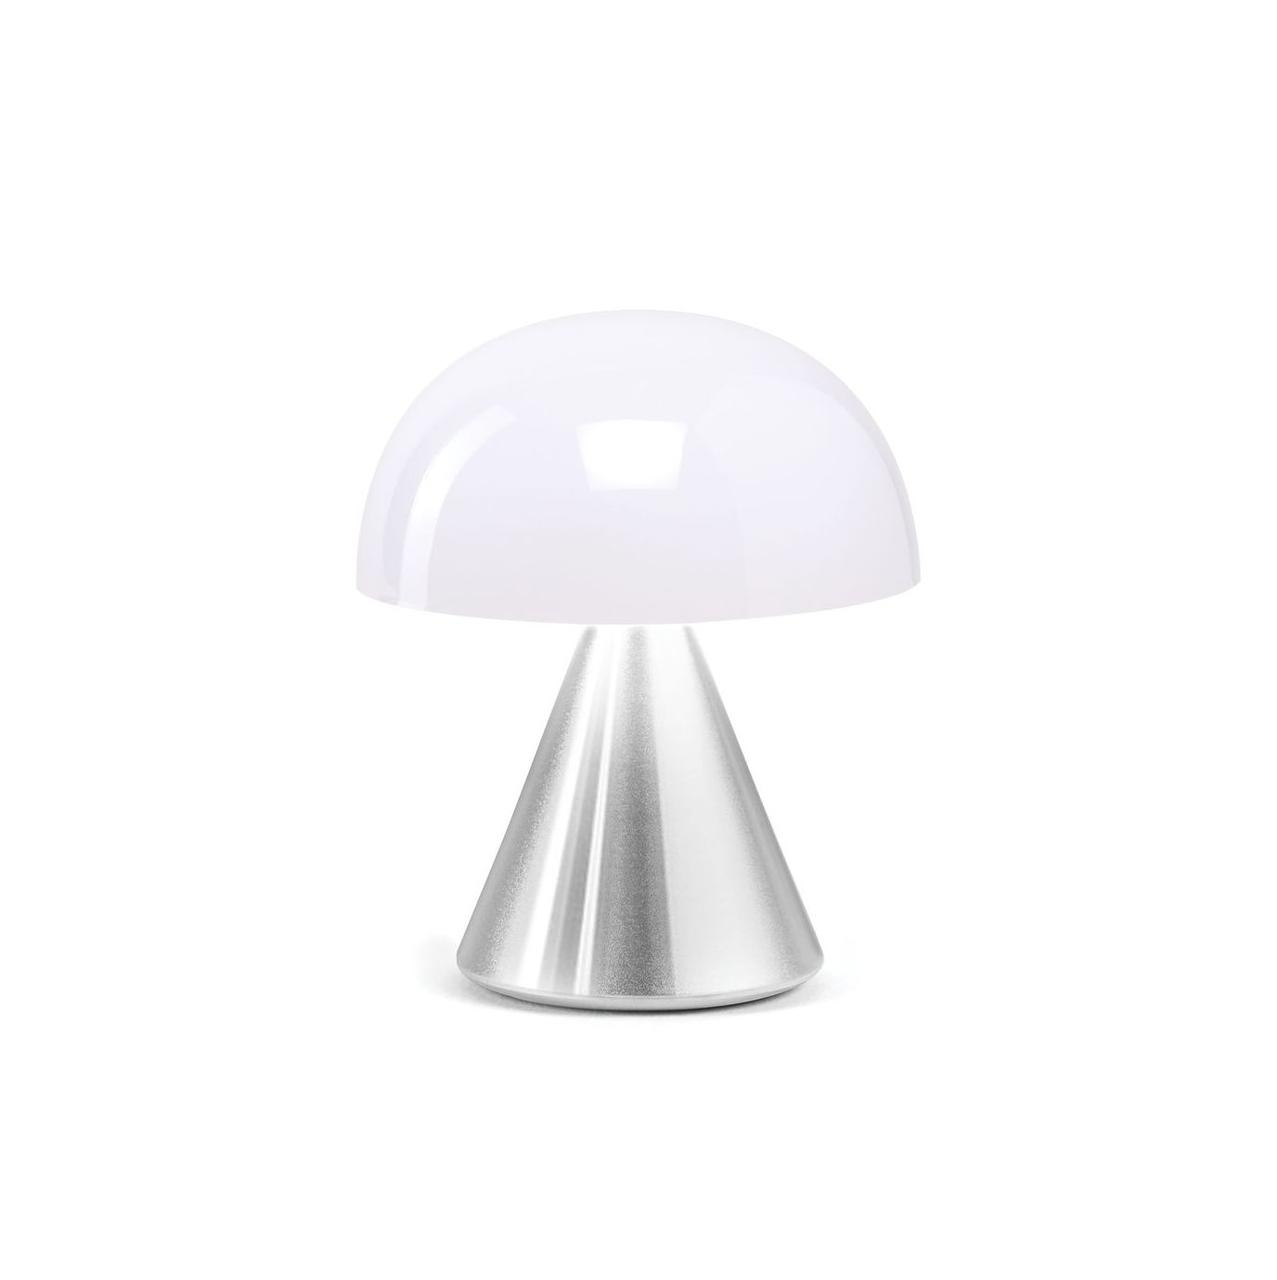 Мини светодиодная лампа Lexon MINA, 8,3 х 7,7 см, алюминий